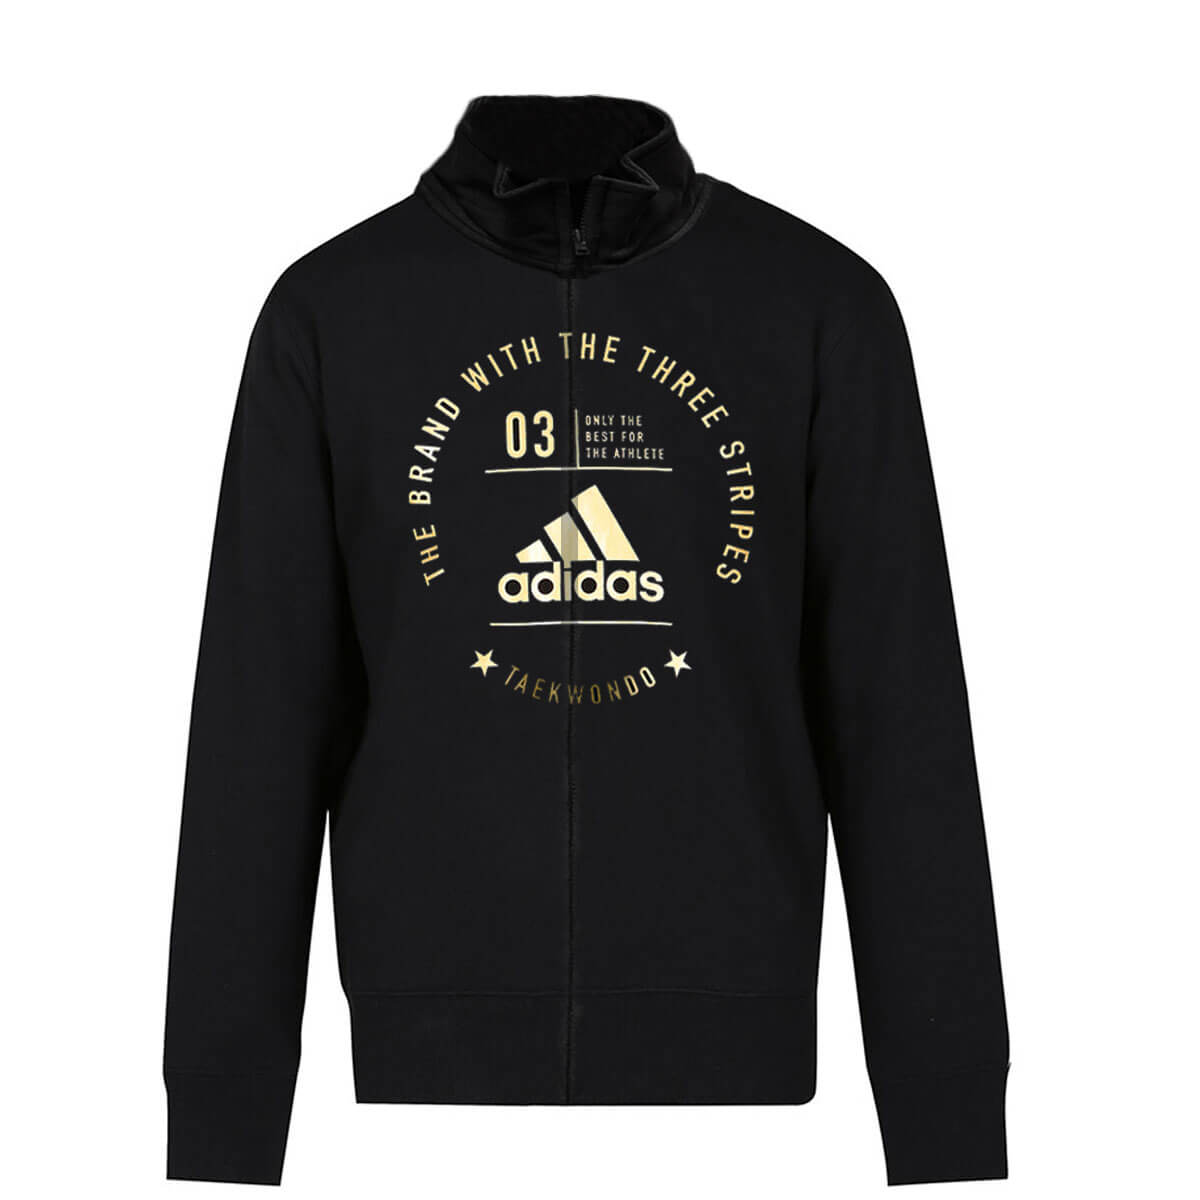 adidas Taekwondo Zipped Jacket Black & Gold - Combat Sports Store